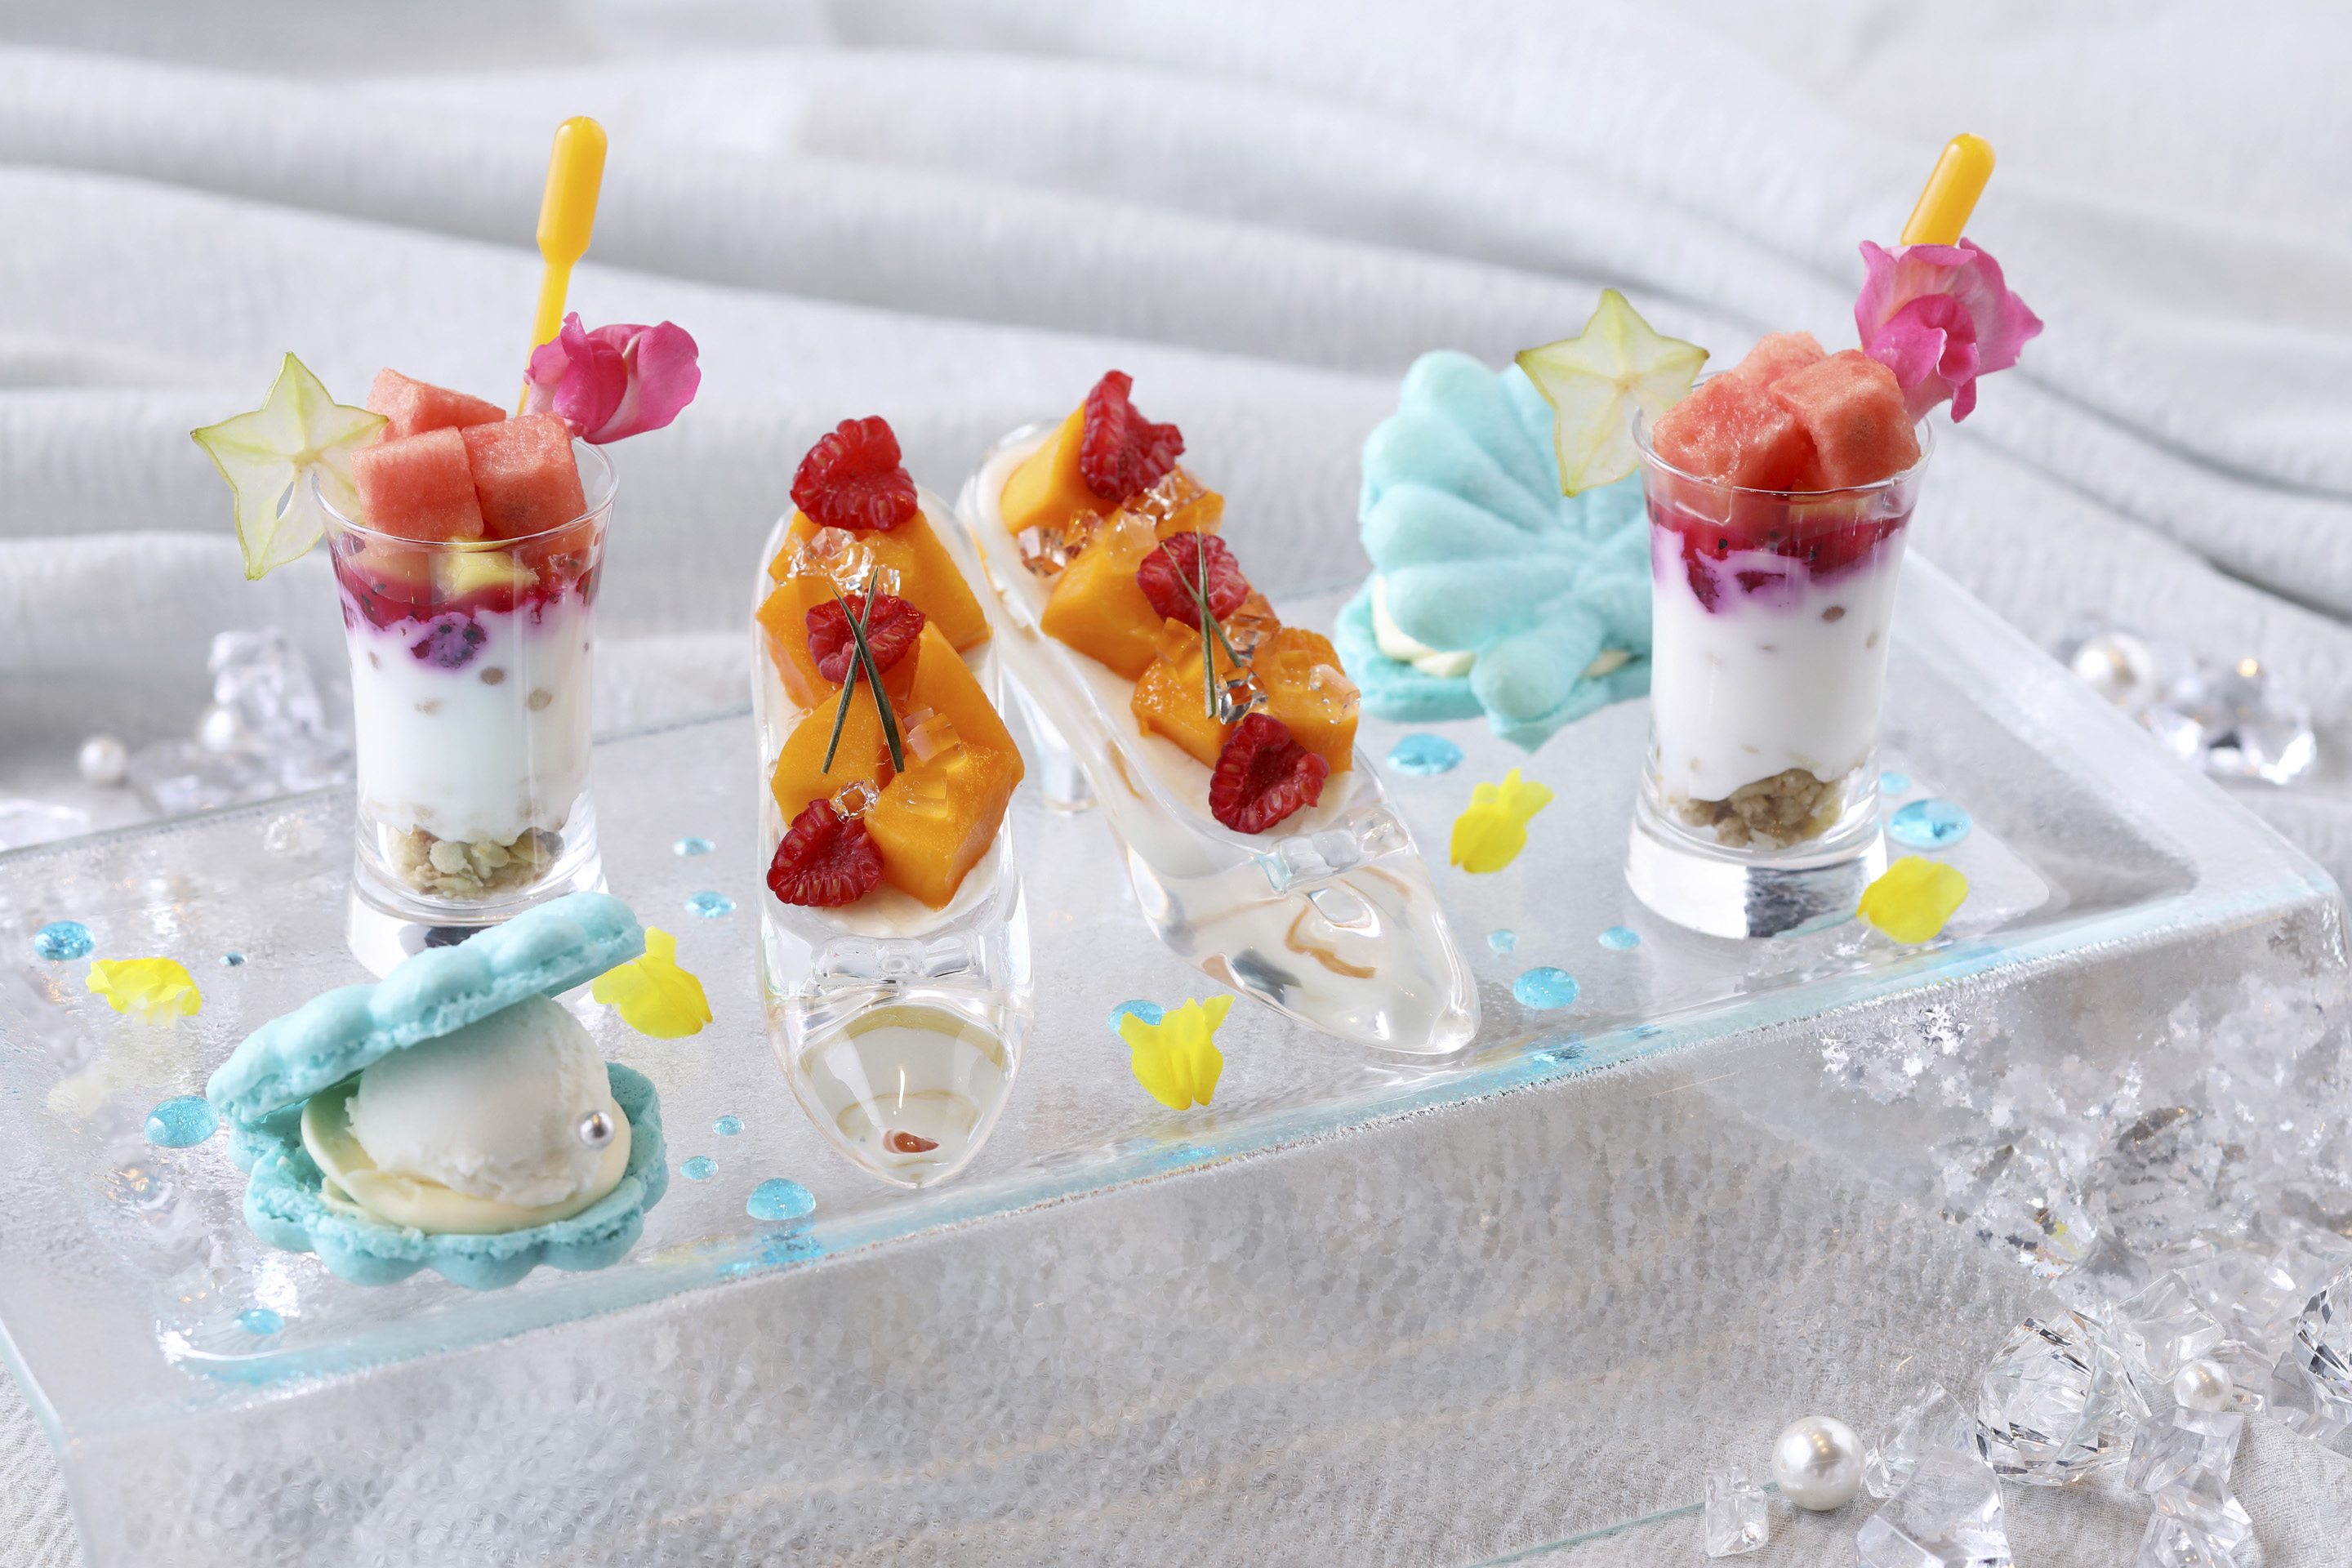 リーガロイヤルホテル京都 可愛い がとまらない Summer Sweet Sweets デザート3種販売 ロイヤルホテルのプレスリリース